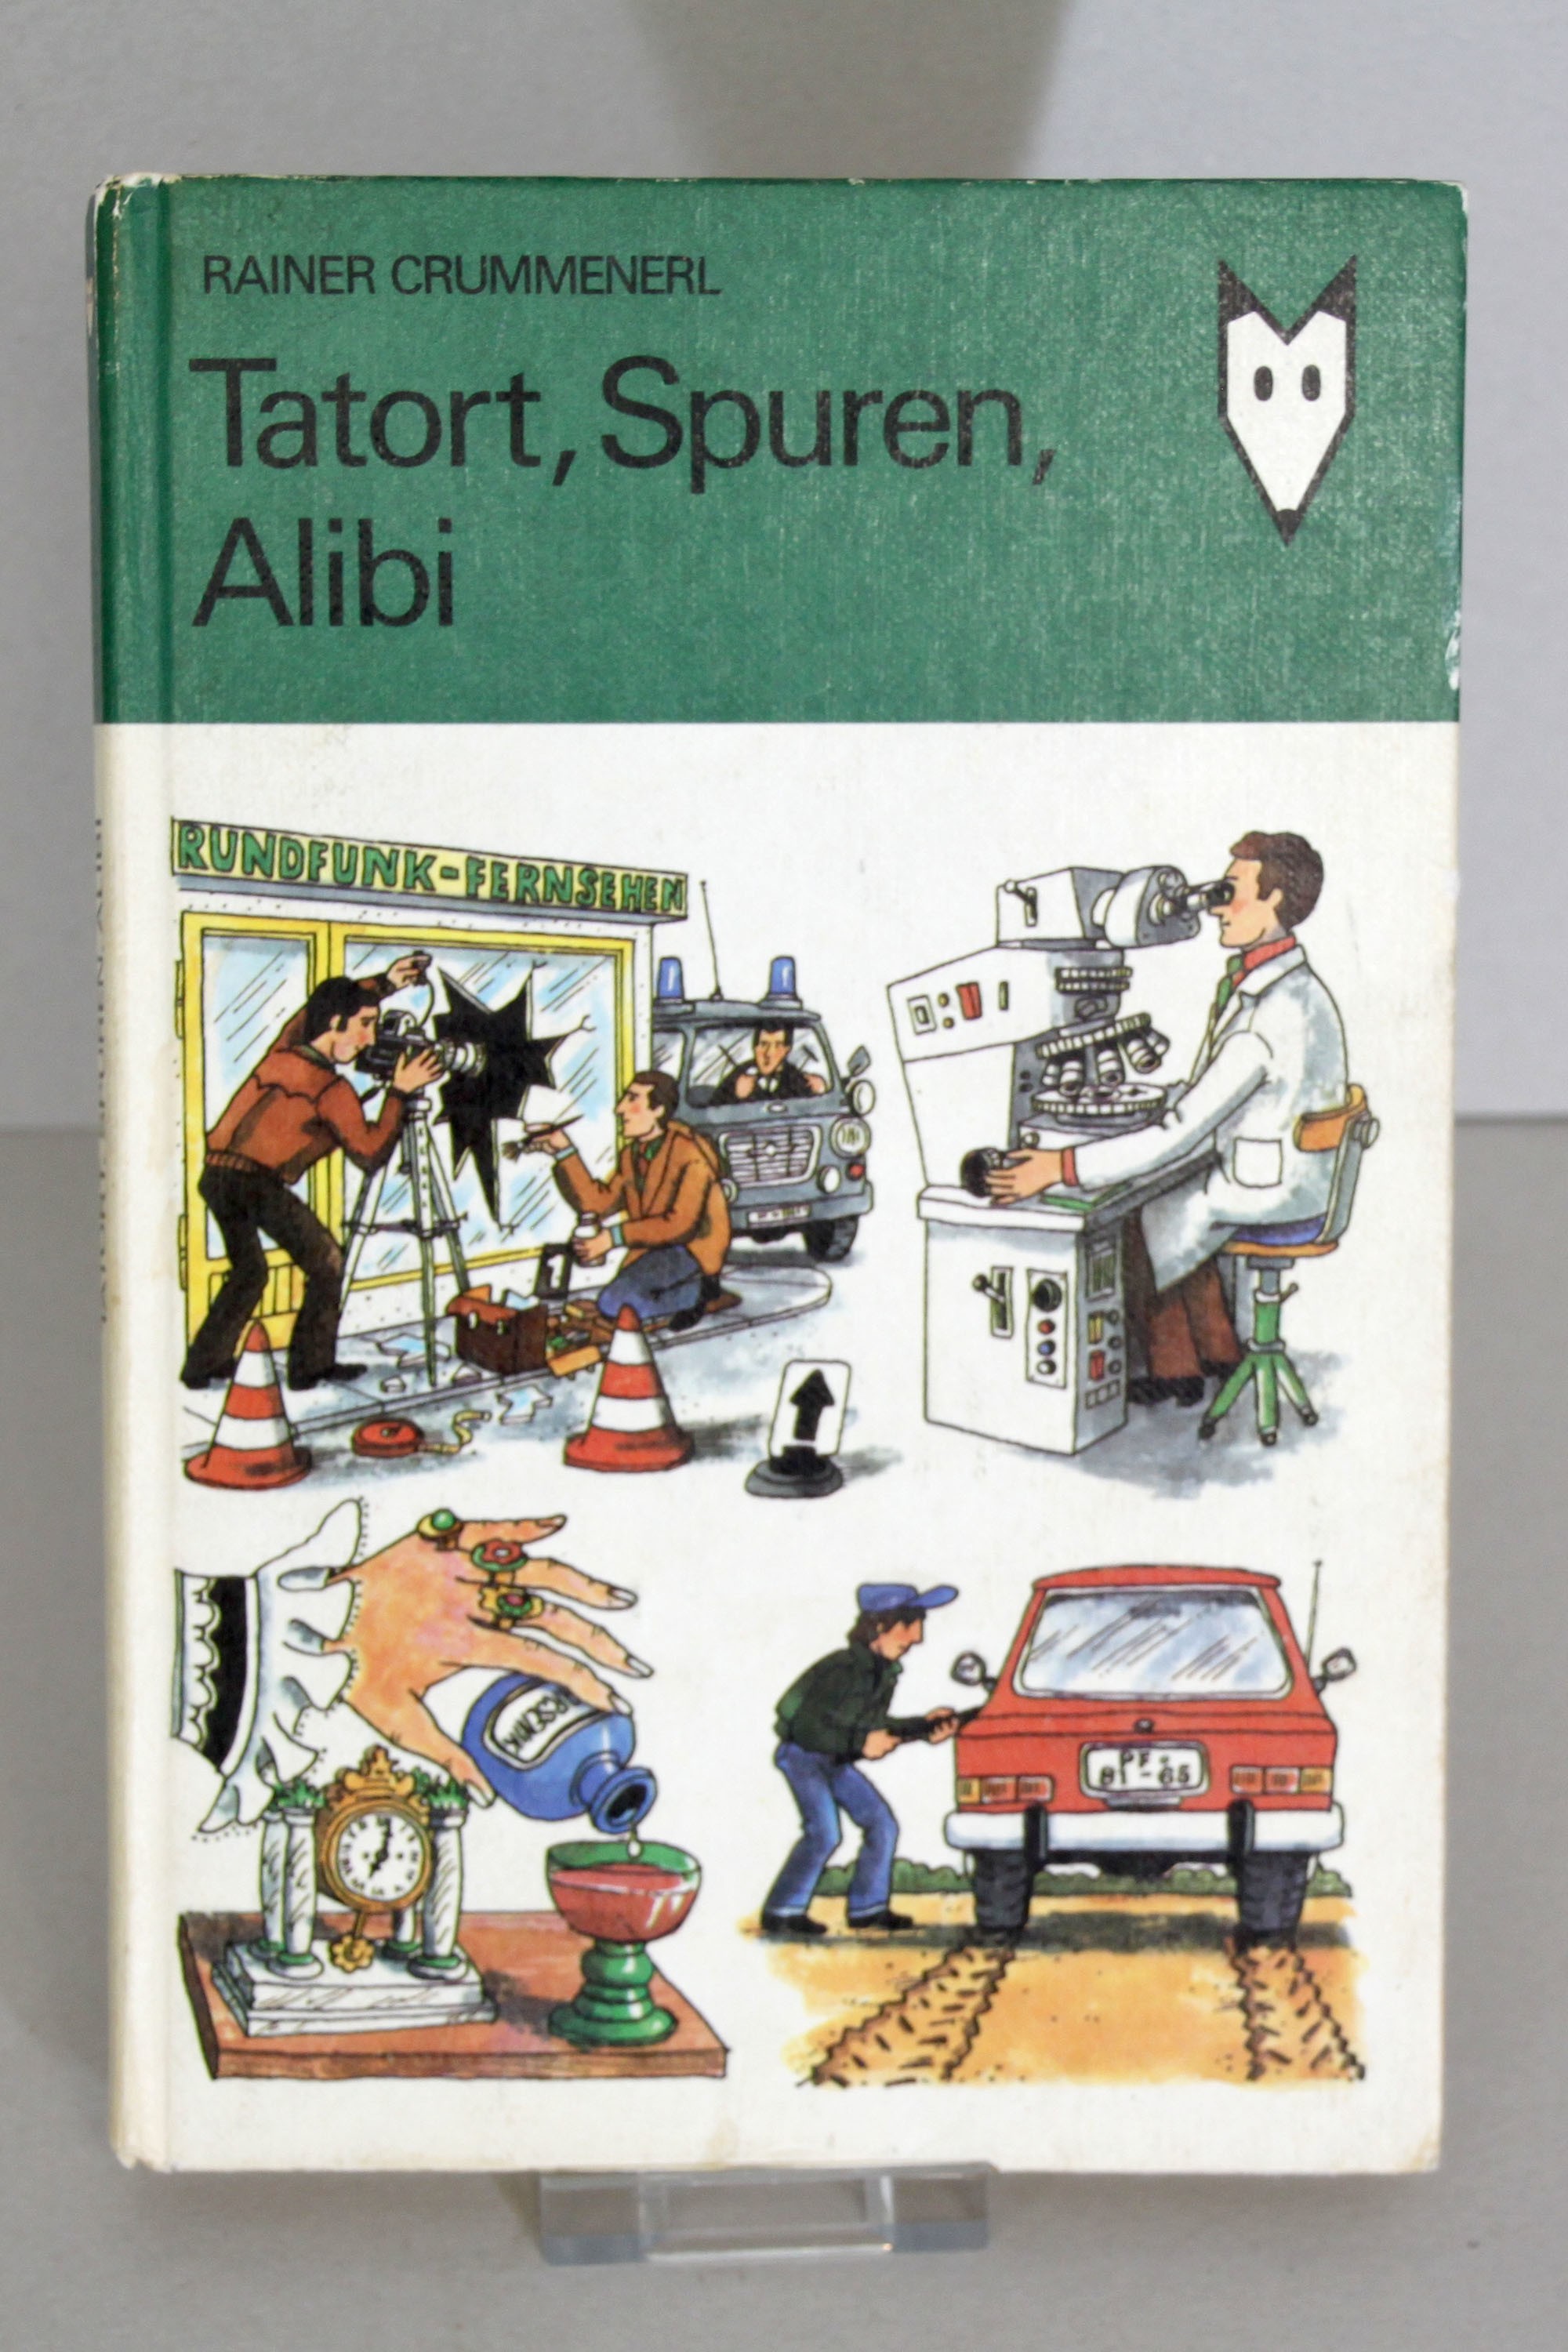 Buch "Tatort, Spuren, Alibi" (Polizeidirektion Dresden RR-F)